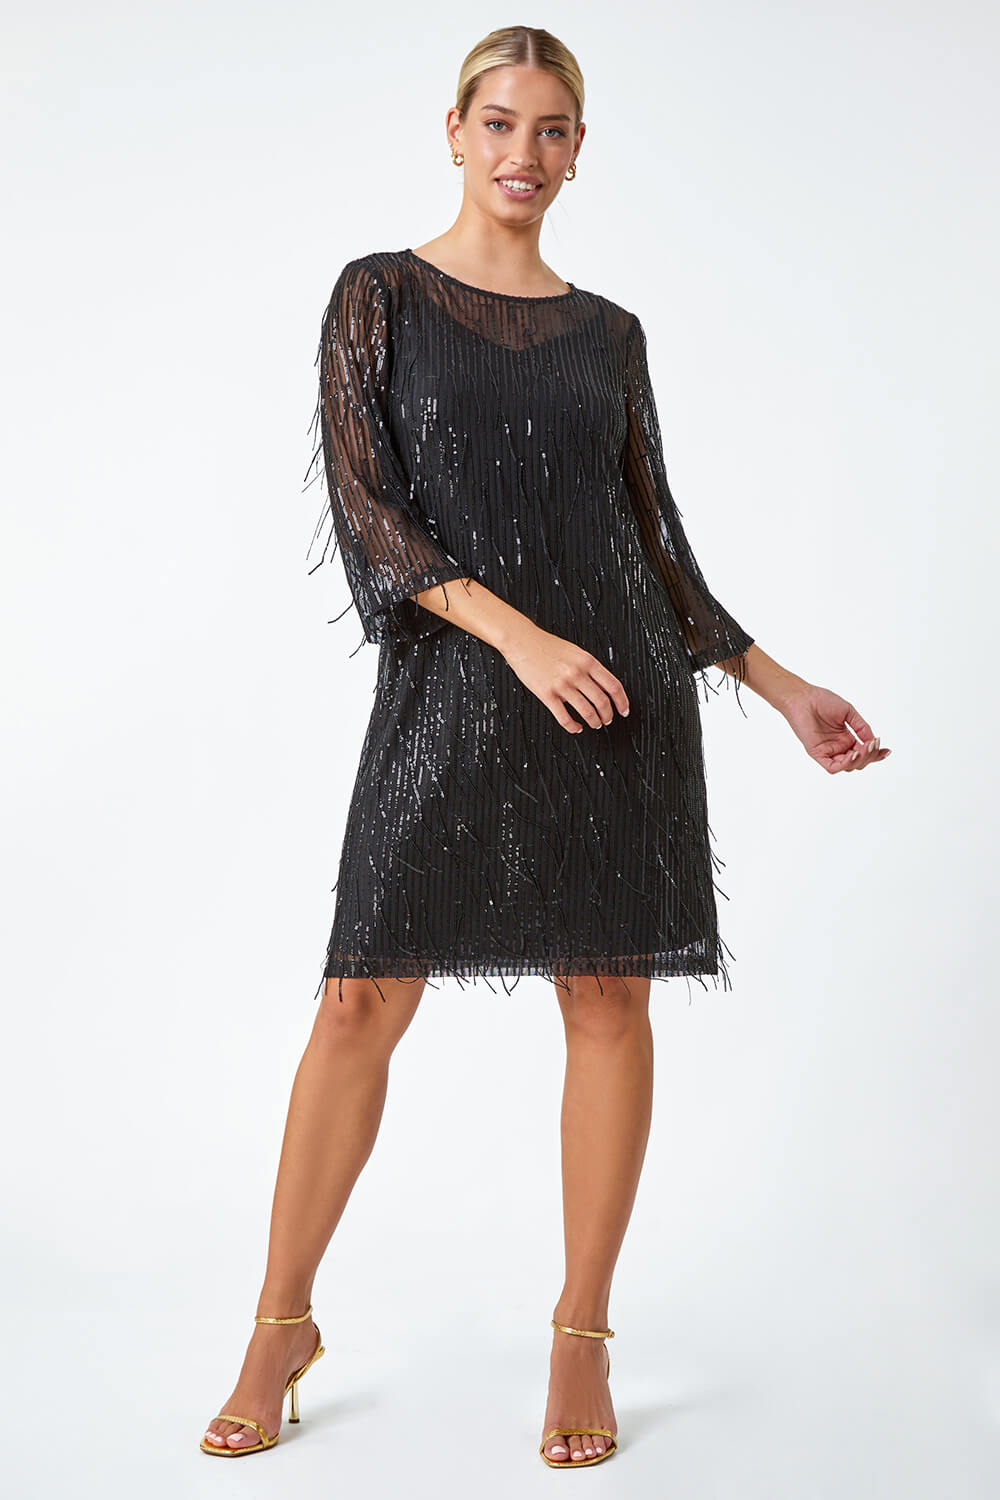 Black Sequin Sparkle Tassel Shift Dress, Image 4 of 5